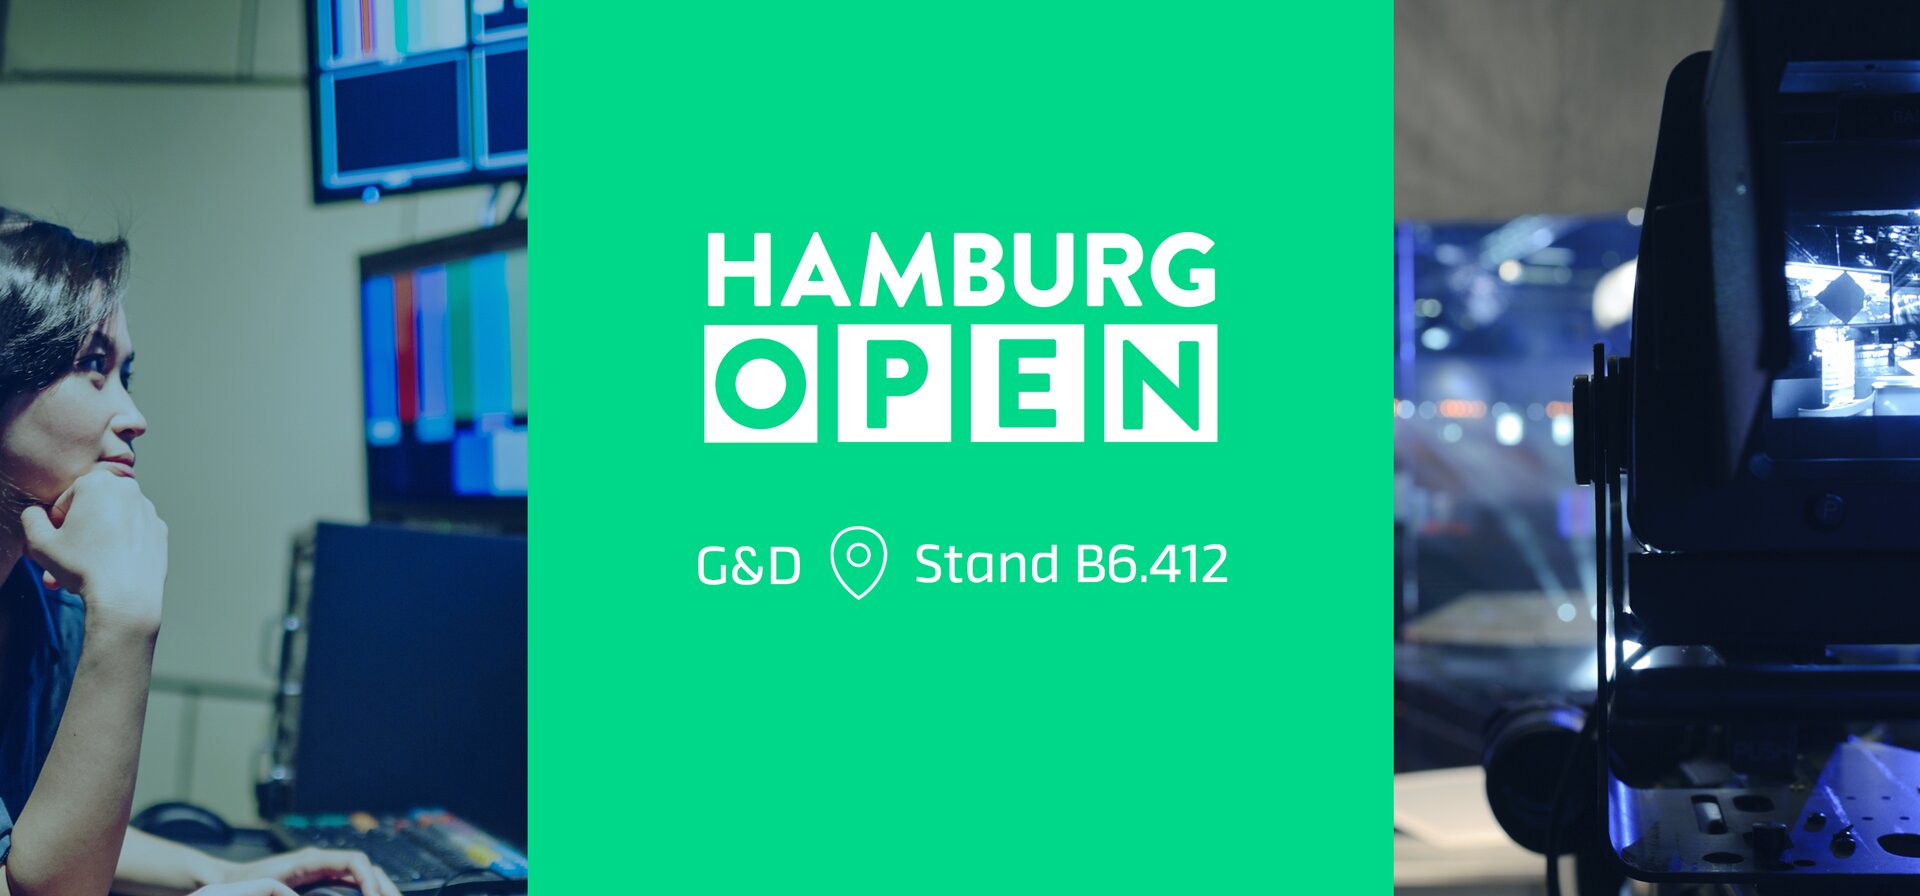 G&D at Hamburg Open 2022